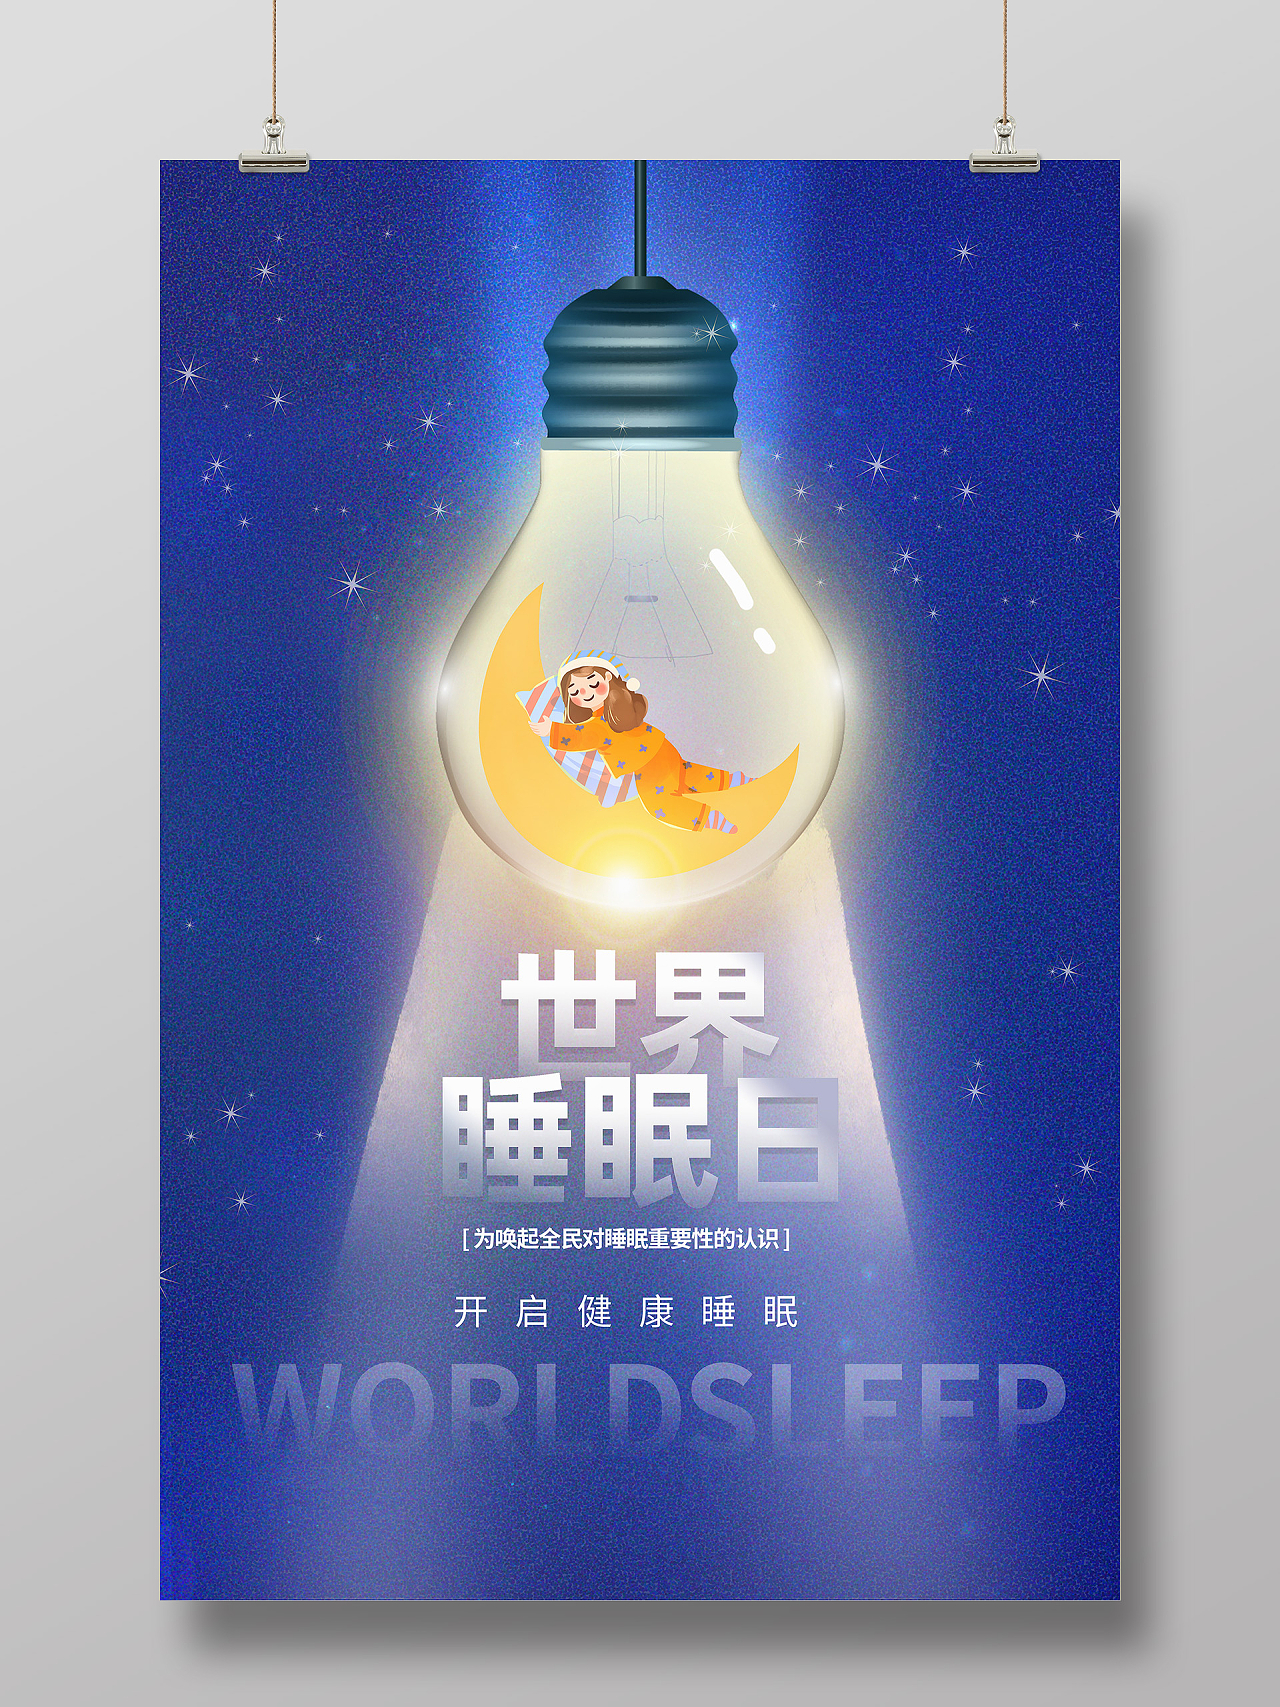 蓝色卡通世界睡眠日睡眠海报